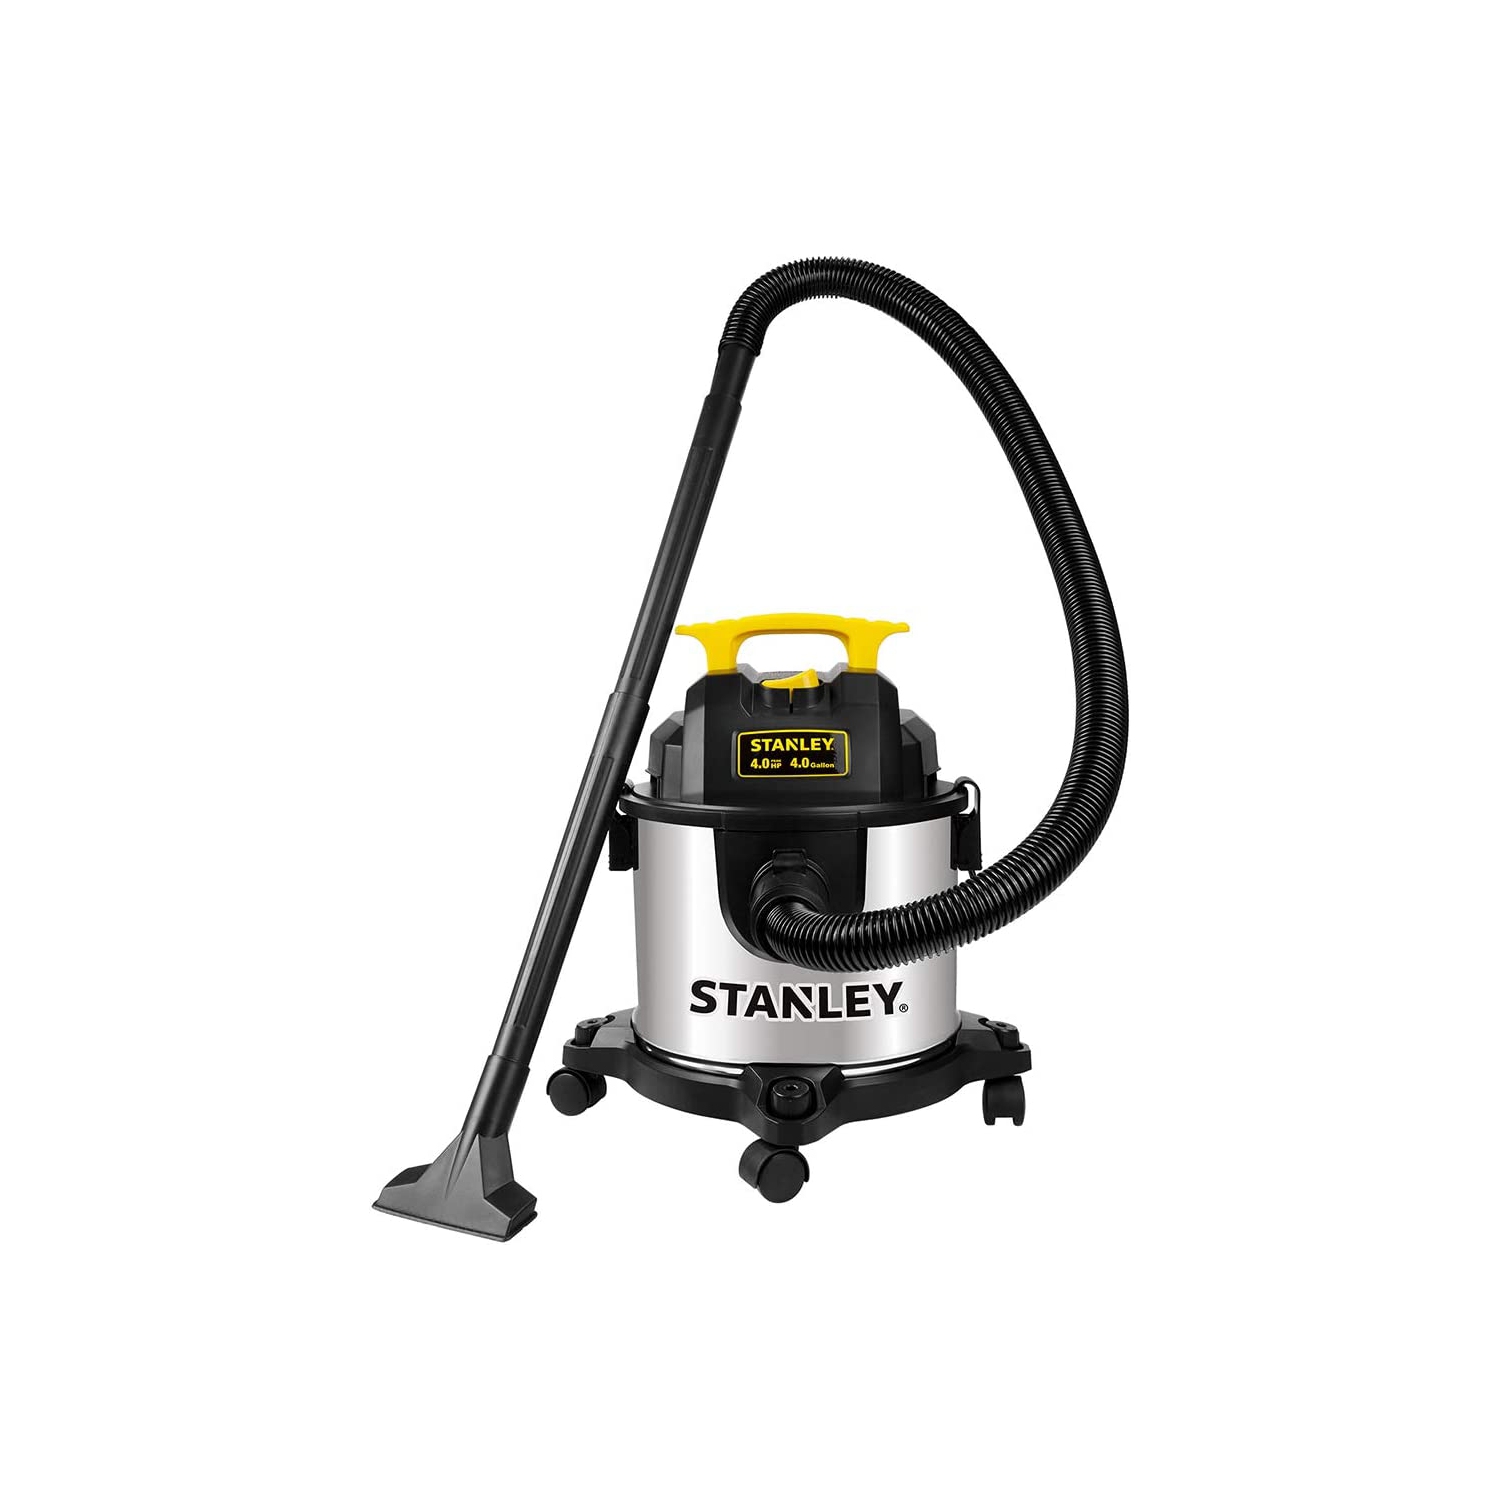 Refurbished (Good) - Stanley SL18301-4B 4 Gallon 4 Peak HP Stainless Steel Wet/Dry Vacuum